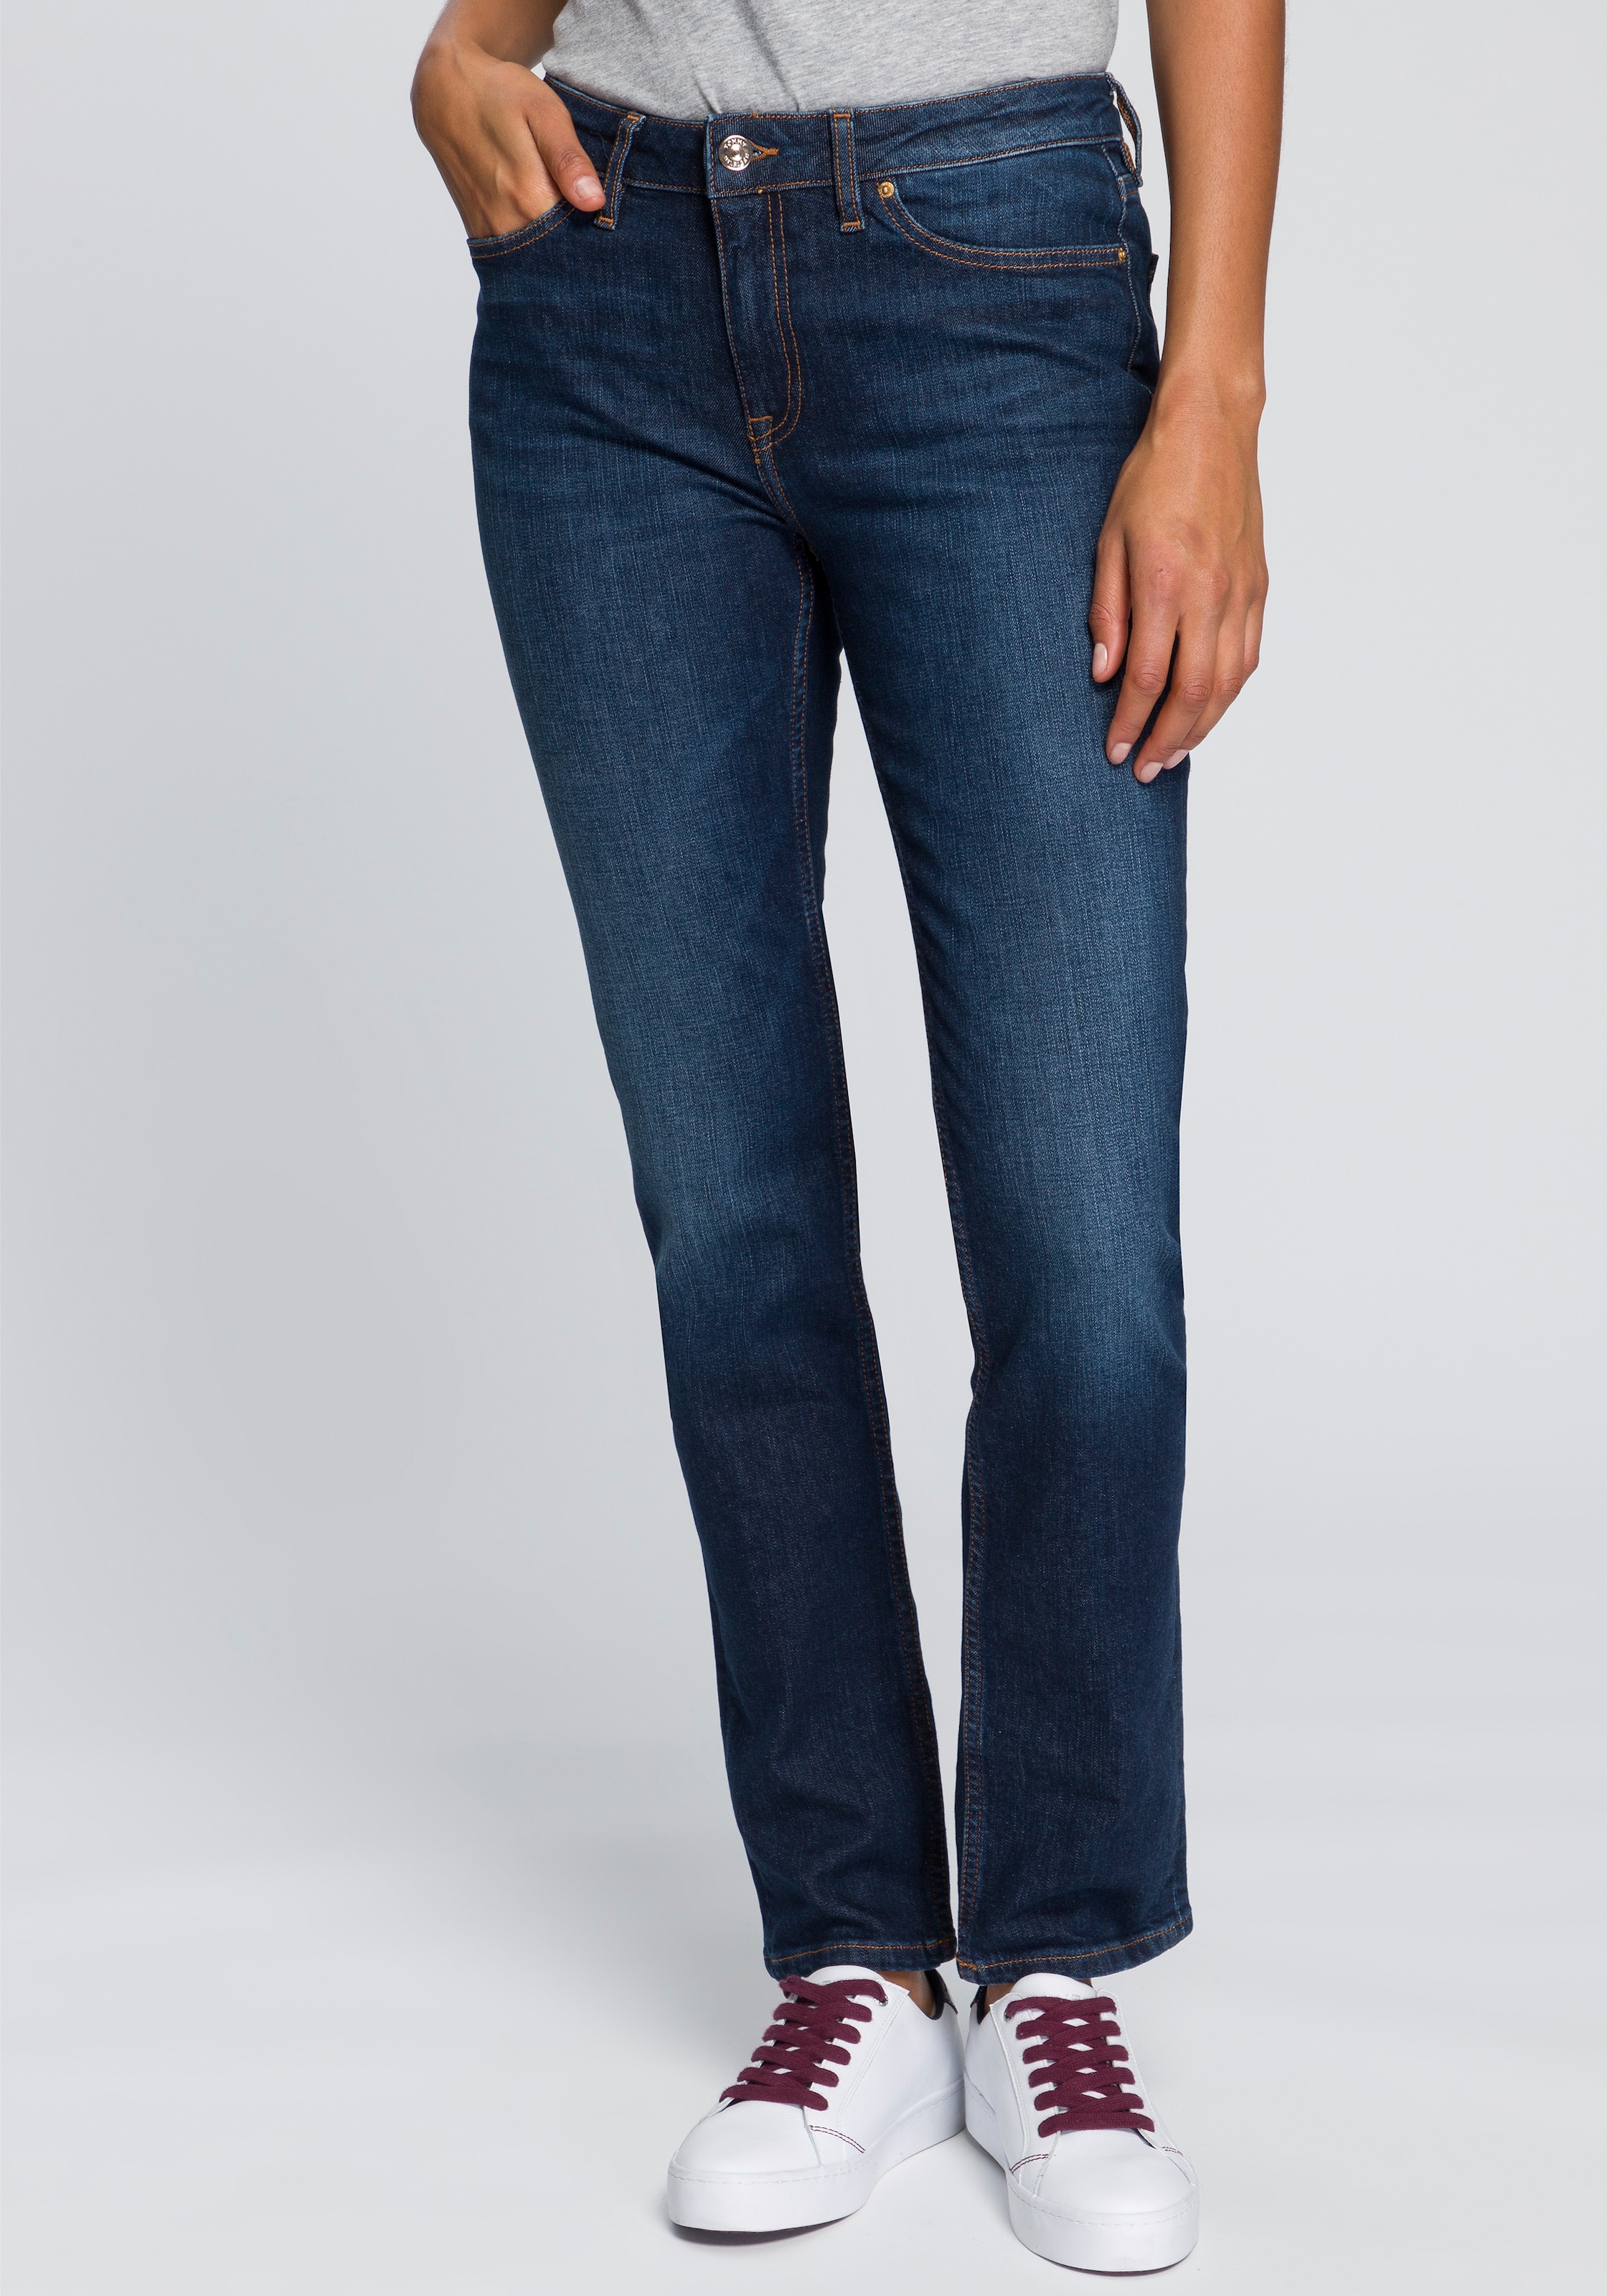 leichten Fadeout-Effekten »HERITAGE RW«, Straight-Jeans Hilfiger ROME STRAIGHT Tommy online kaufen mit bei OTTO